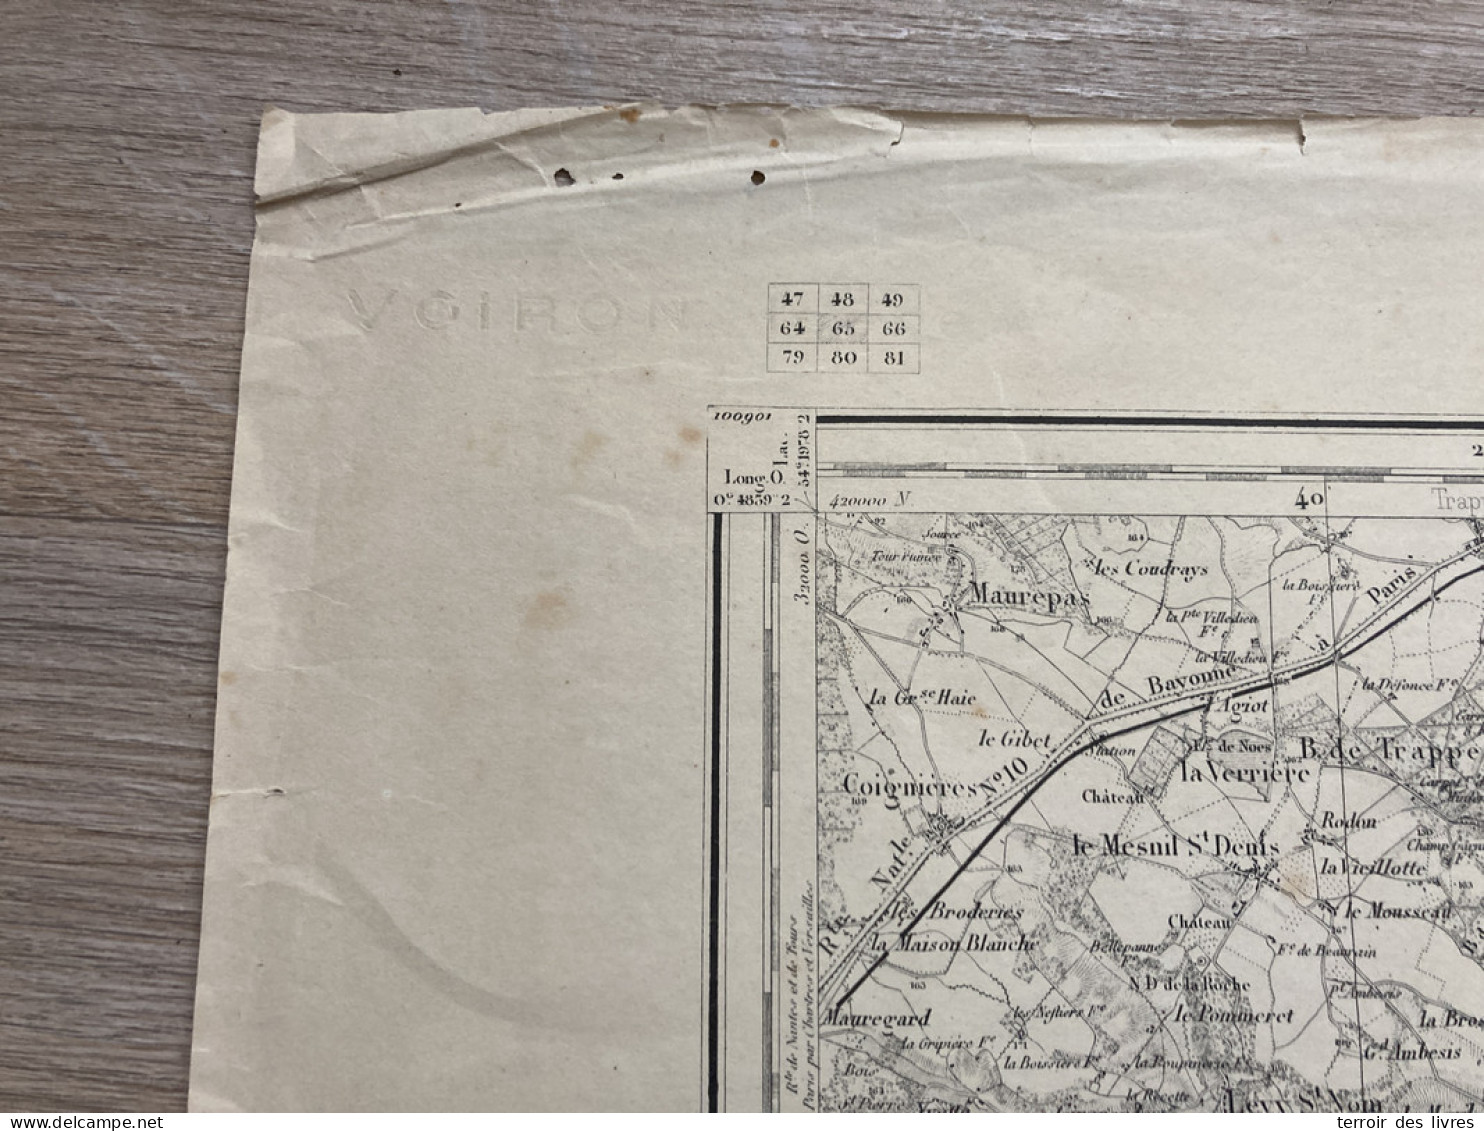 Carte état Major MELUN 1888 35x54cm CHEVREUSE RHODON MILON-LA-CHAPELLE ST-REMY-LES-CHEVREUSE CHOISEL ST-LAMBERT BOULLAY- - Landkarten